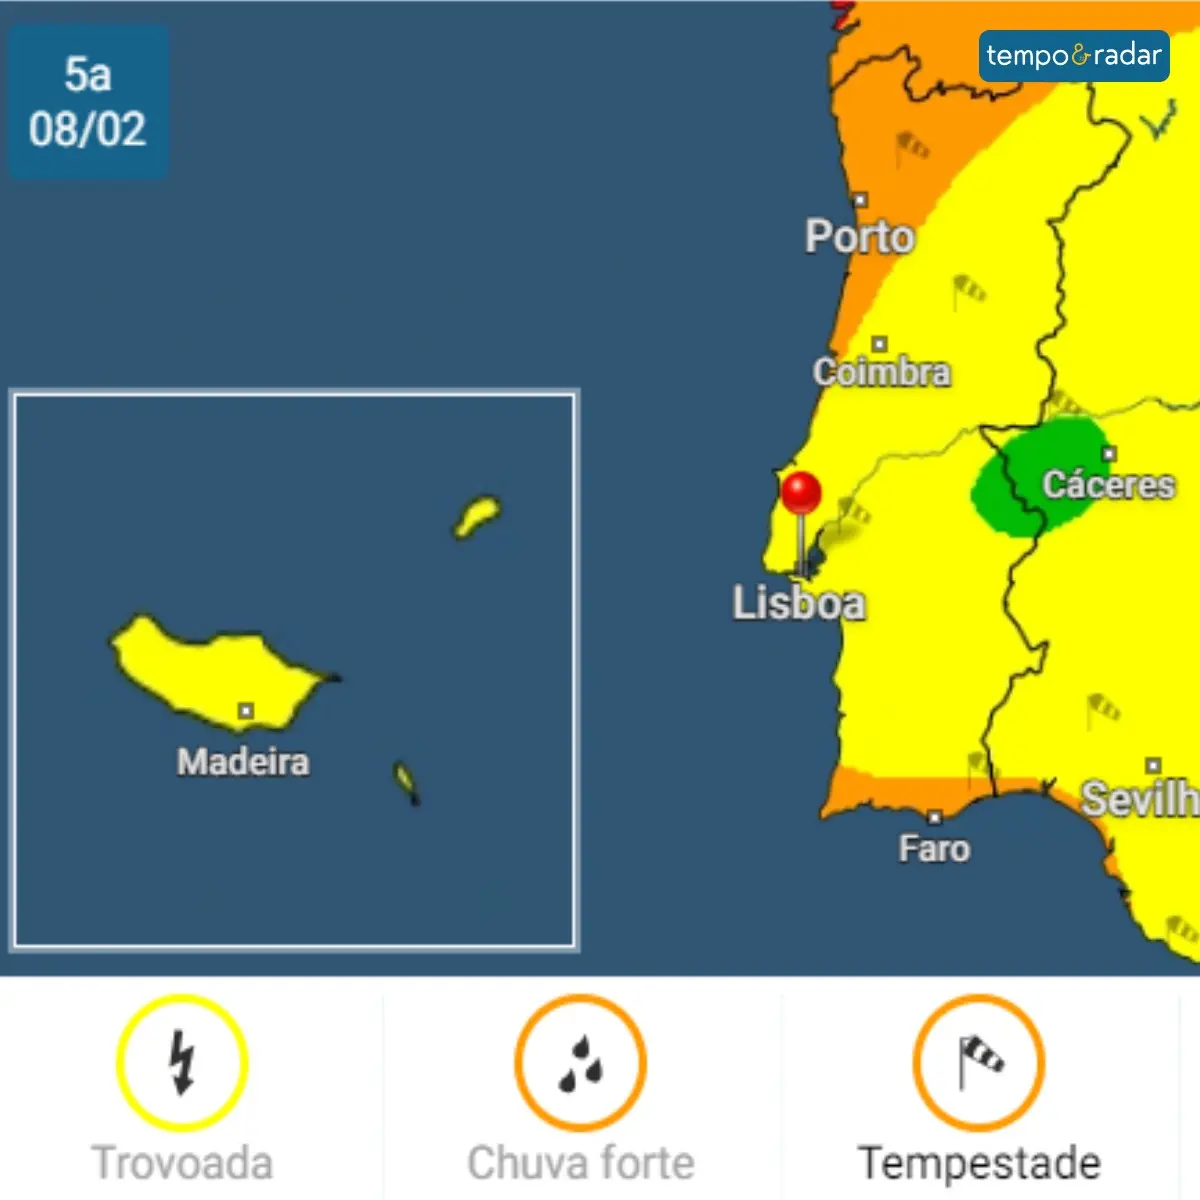 Ao tocar nesse alerta, será redirecionado para mapas interativos de Portugal continental.